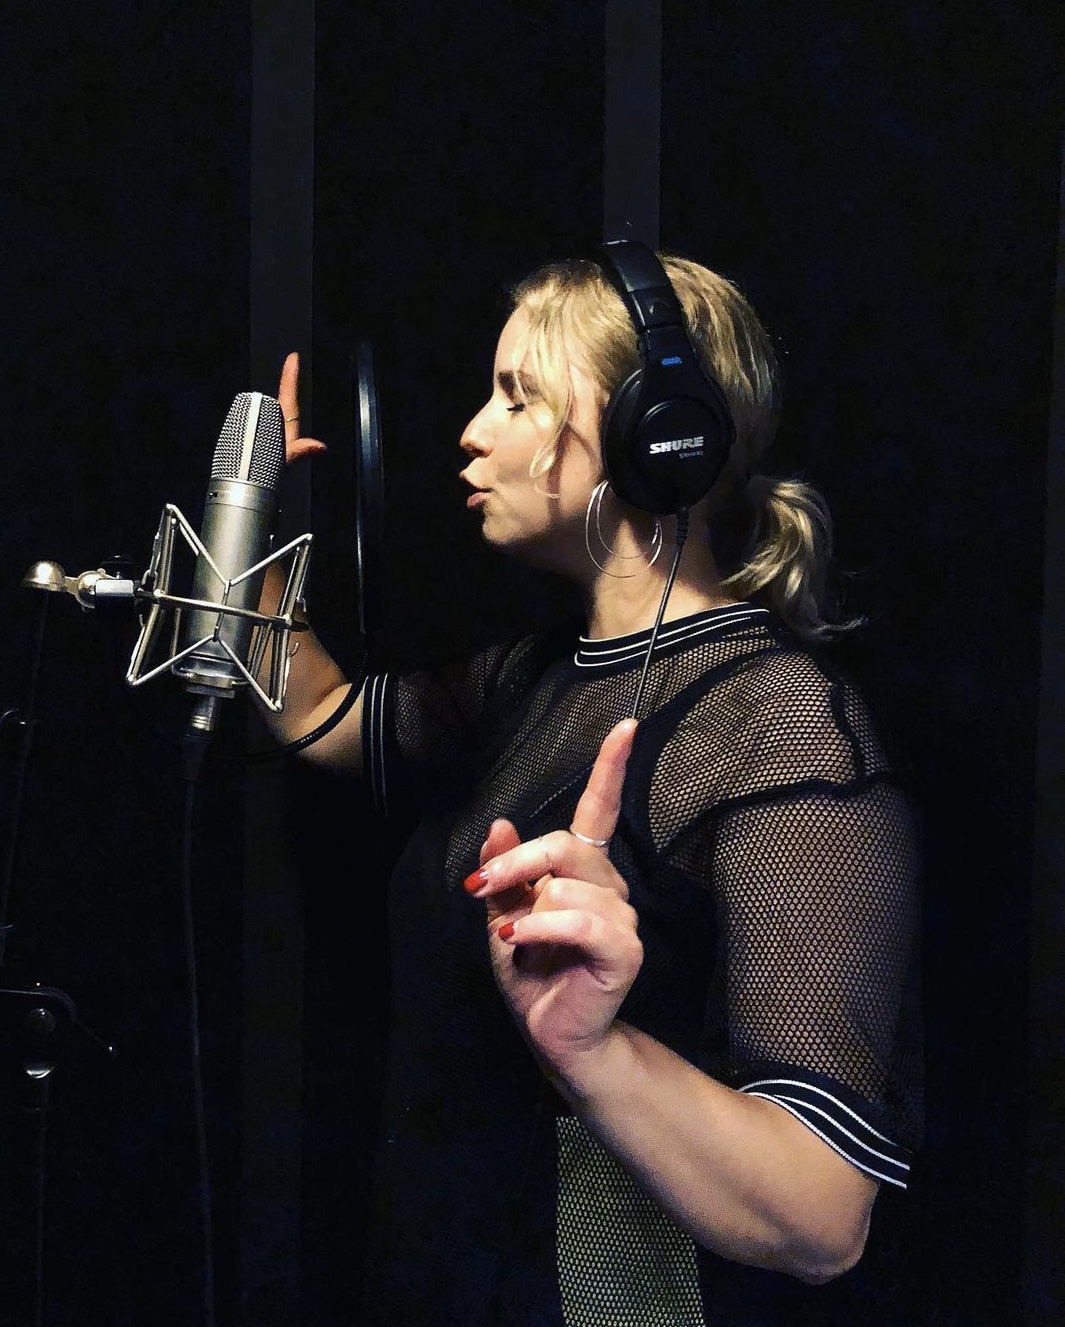 En bild på sångläraren Catharina som sjunger i en studio